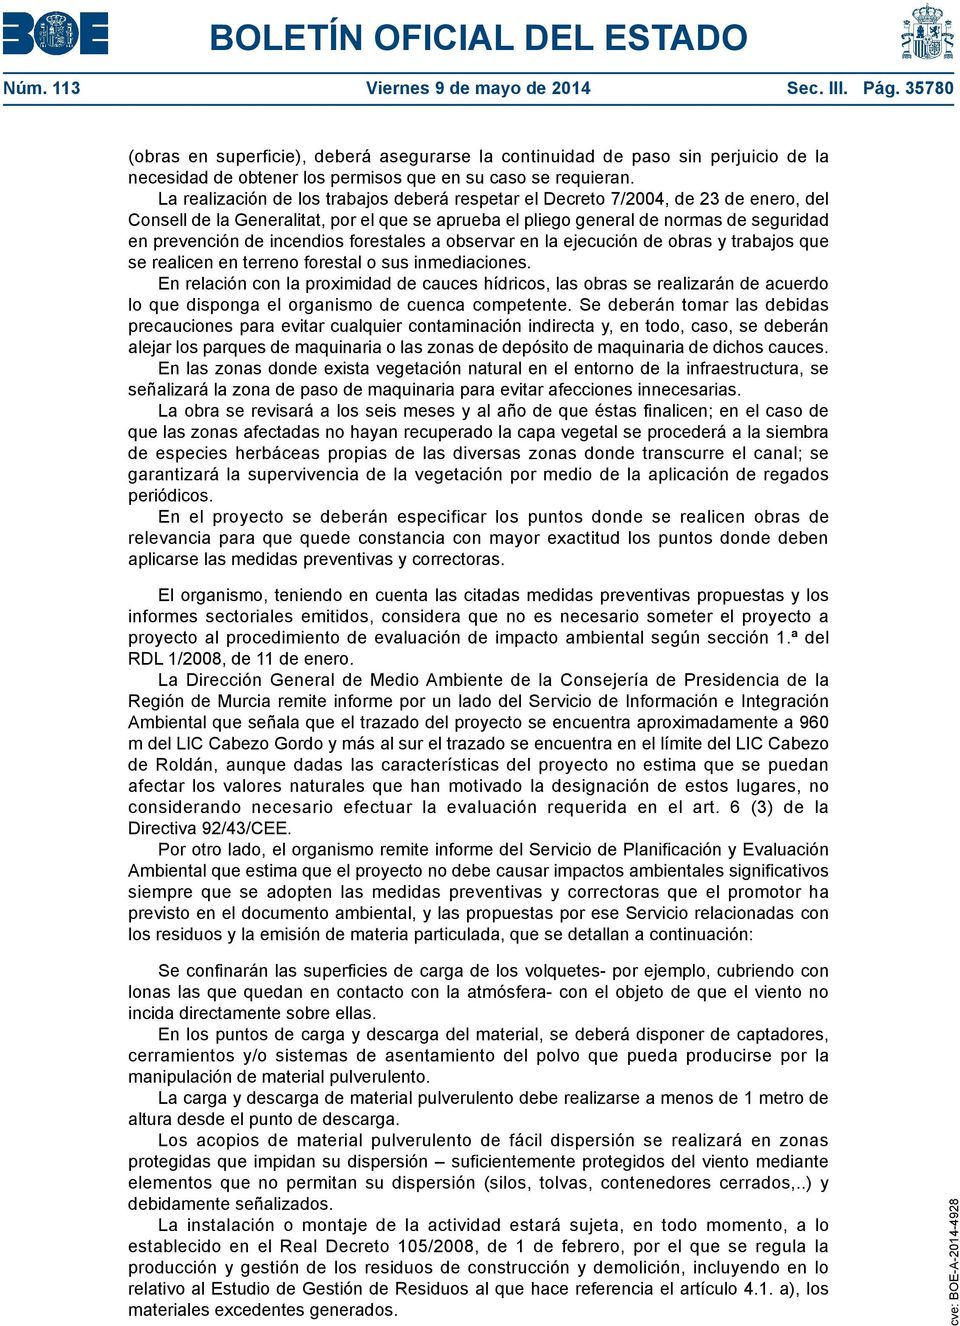 La realización de los trabajos deberá respetar el Decreto 7/2004, de 23 de enero, del Consell de la Generalitat, por el que se aprueba el pliego general de normas de seguridad en prevención de